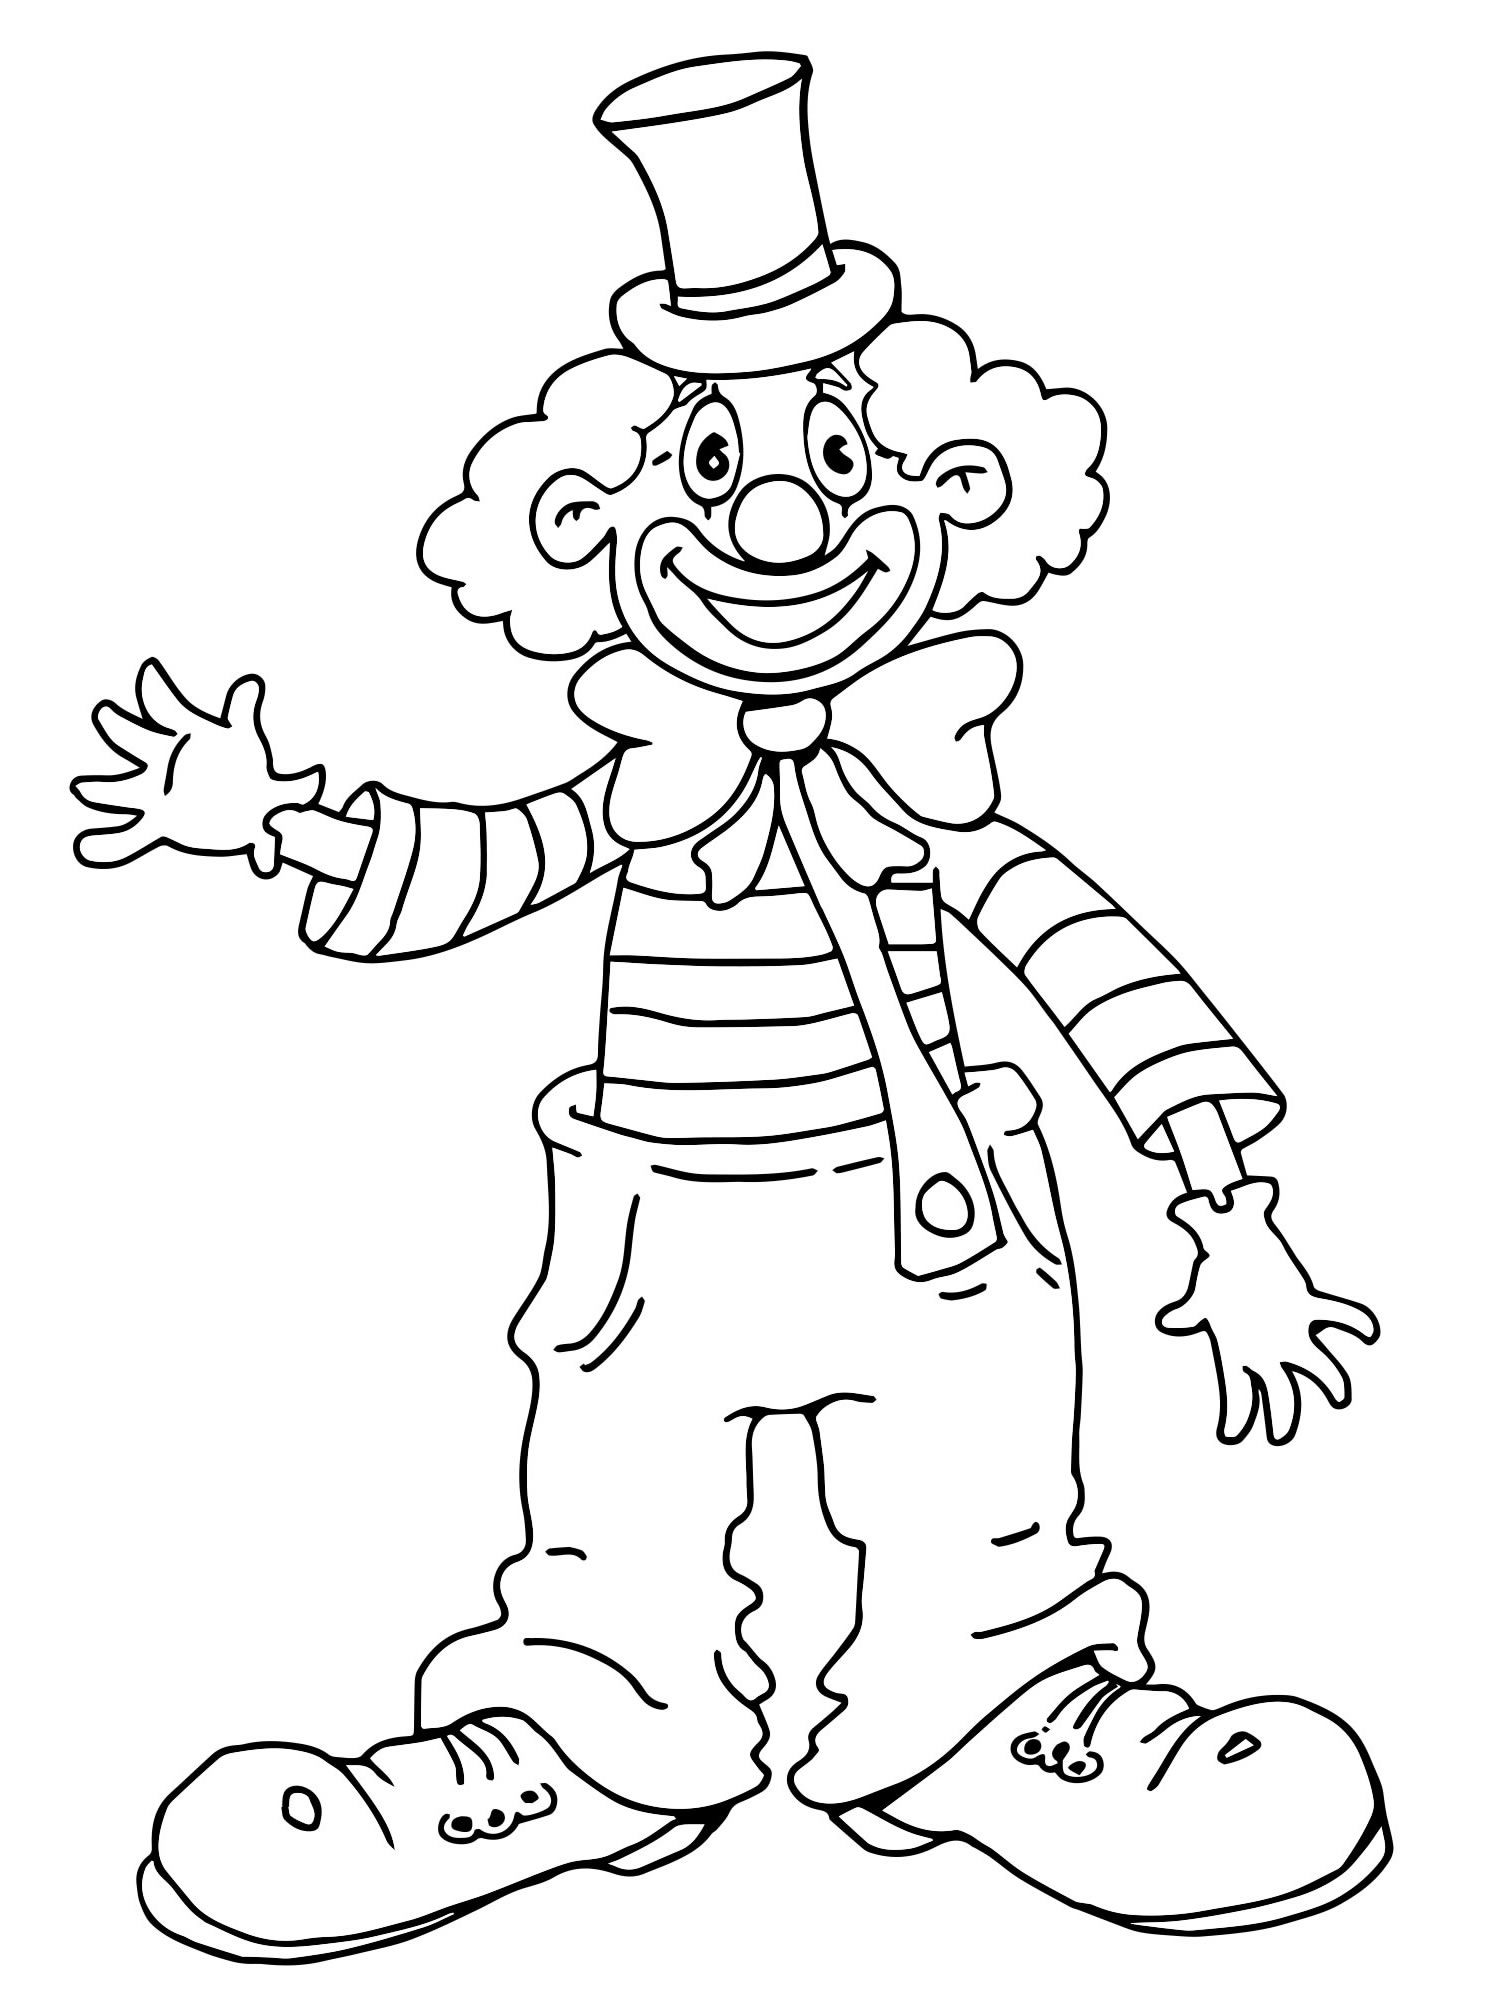 Клоуны раскраска для детей 5 лет. Клоун раскраска. Клоун раскраска для детей. Клоун рисунок. Раскраска весёлый клоун для детей.